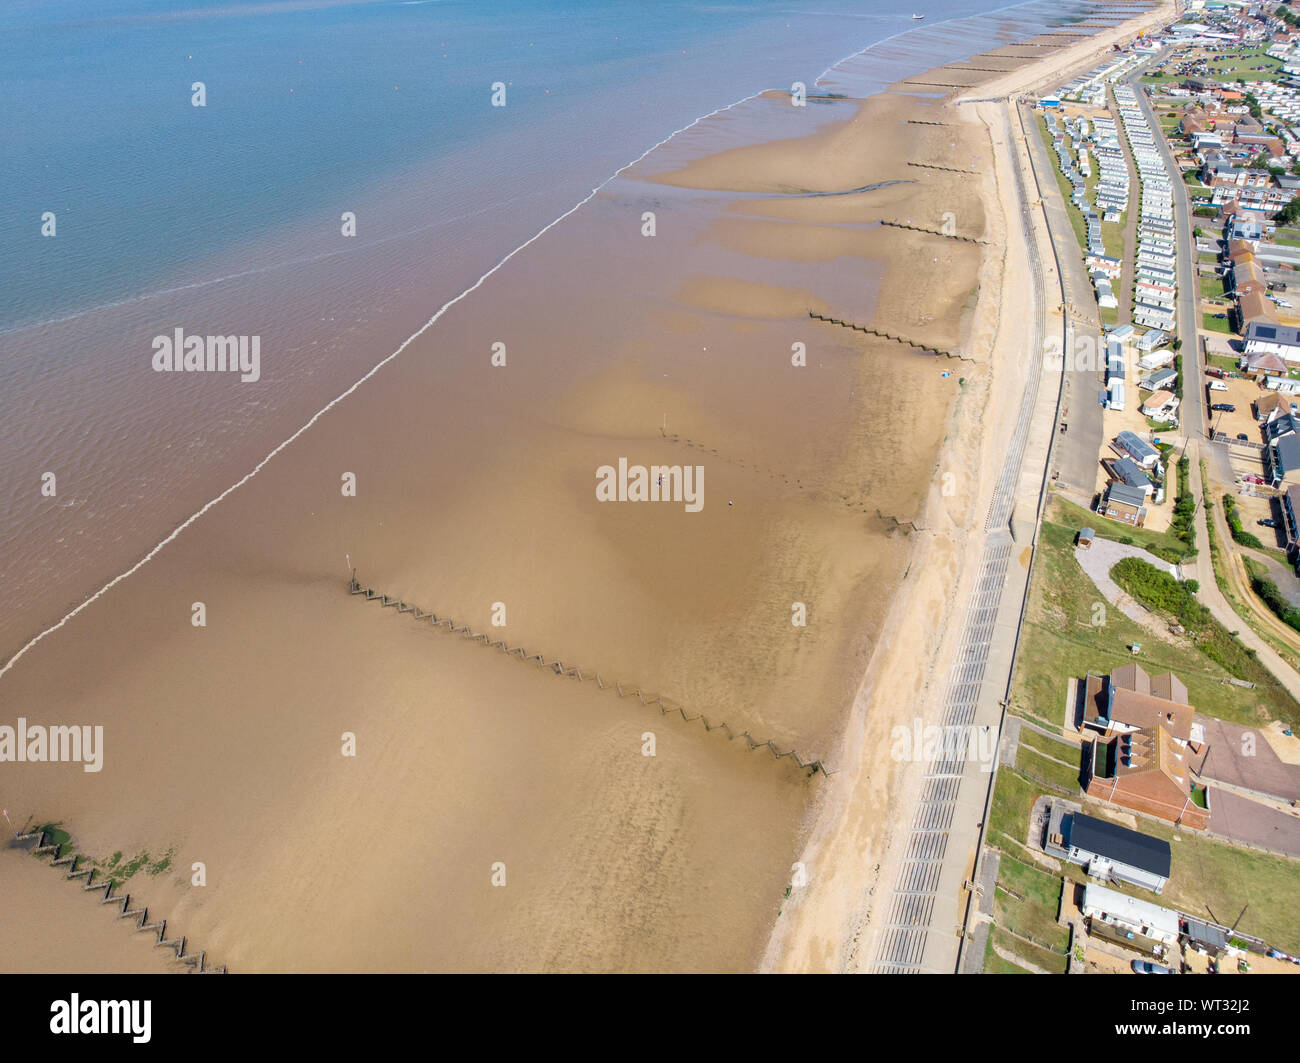 Foto aerea del British cittadina balneare di Hunstanton in Norfolk che mostra la zona costiera e la spiaggia e alsop il caravan holiday park. Foto Stock